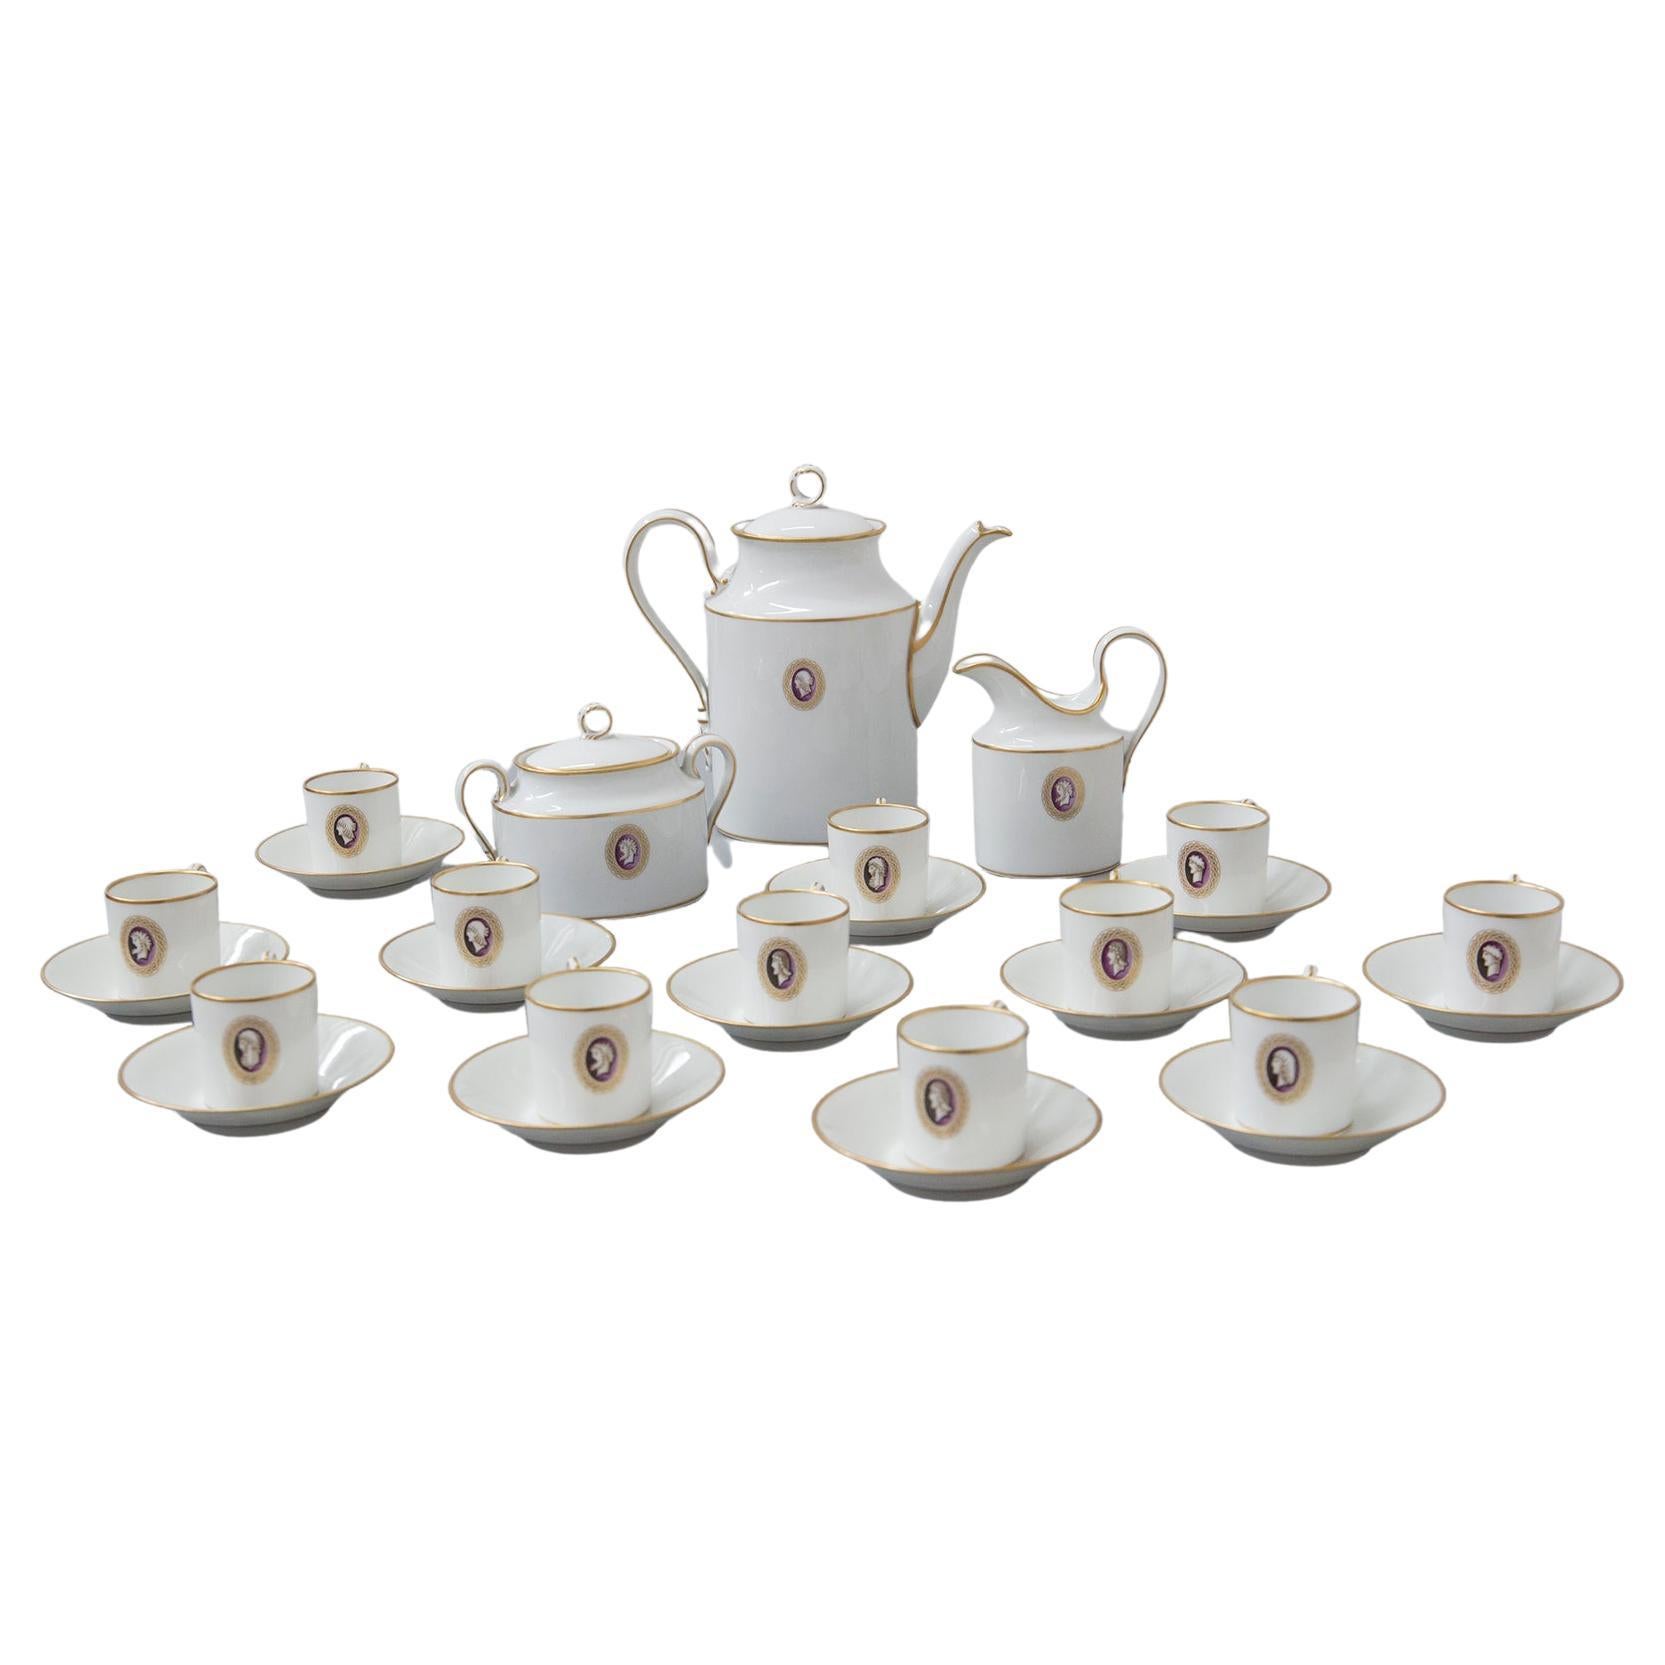 Richard Ginori Ceramic Tea Set Designed attr. to Gio Ponti